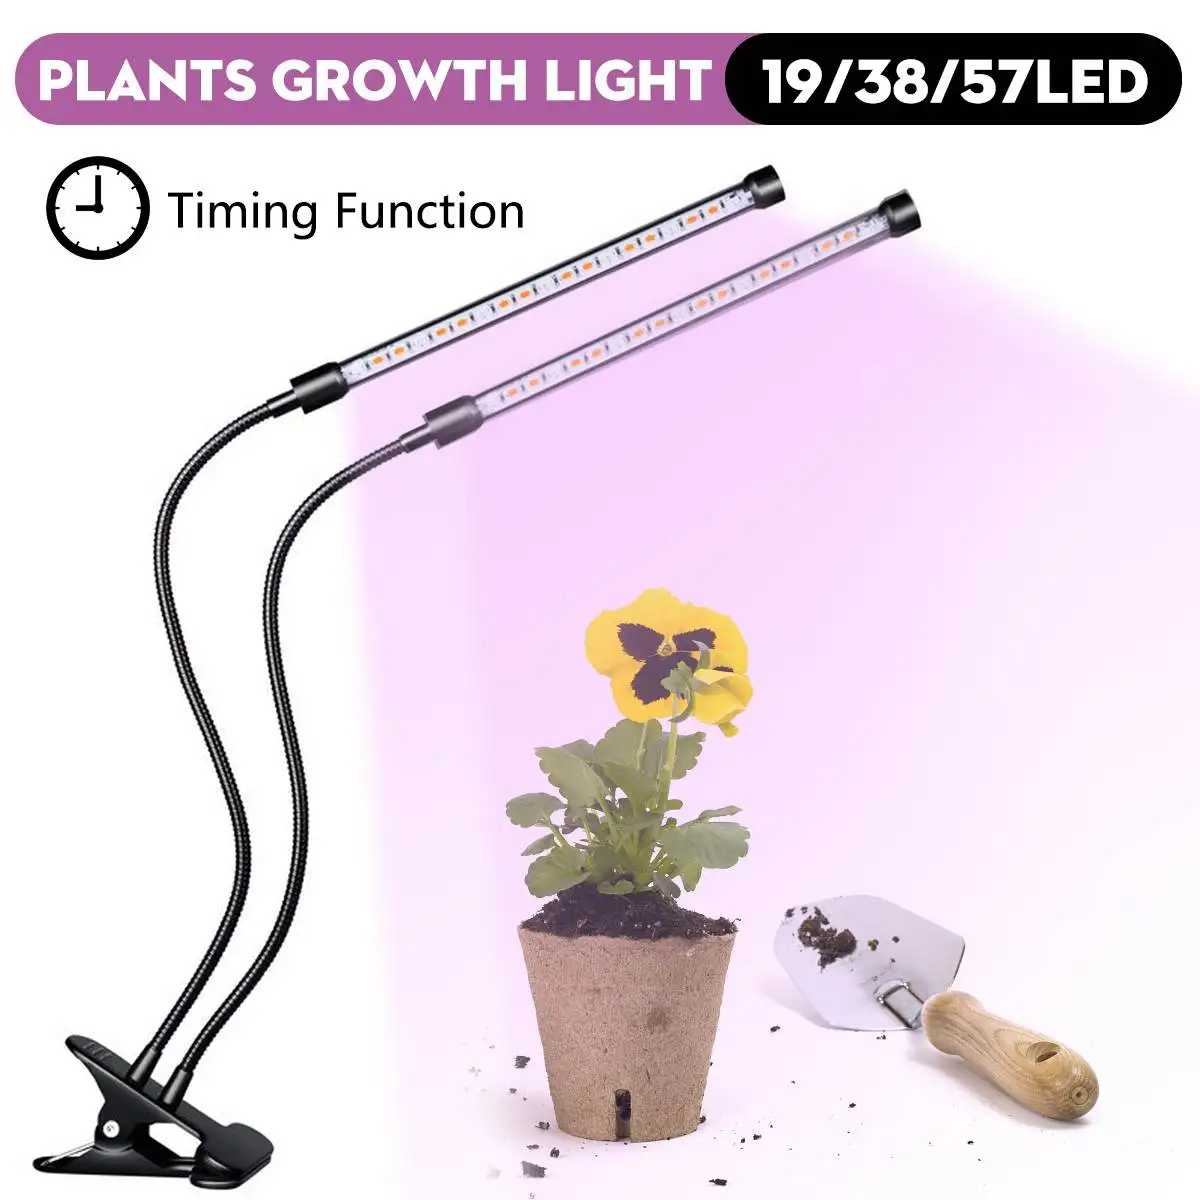 6 Вт/12 Вт/18 Вт Led светодиодные лампы для выращивания растений лампы для растений и аквариума 19/38/57 светодиоды спектрами свет посева для